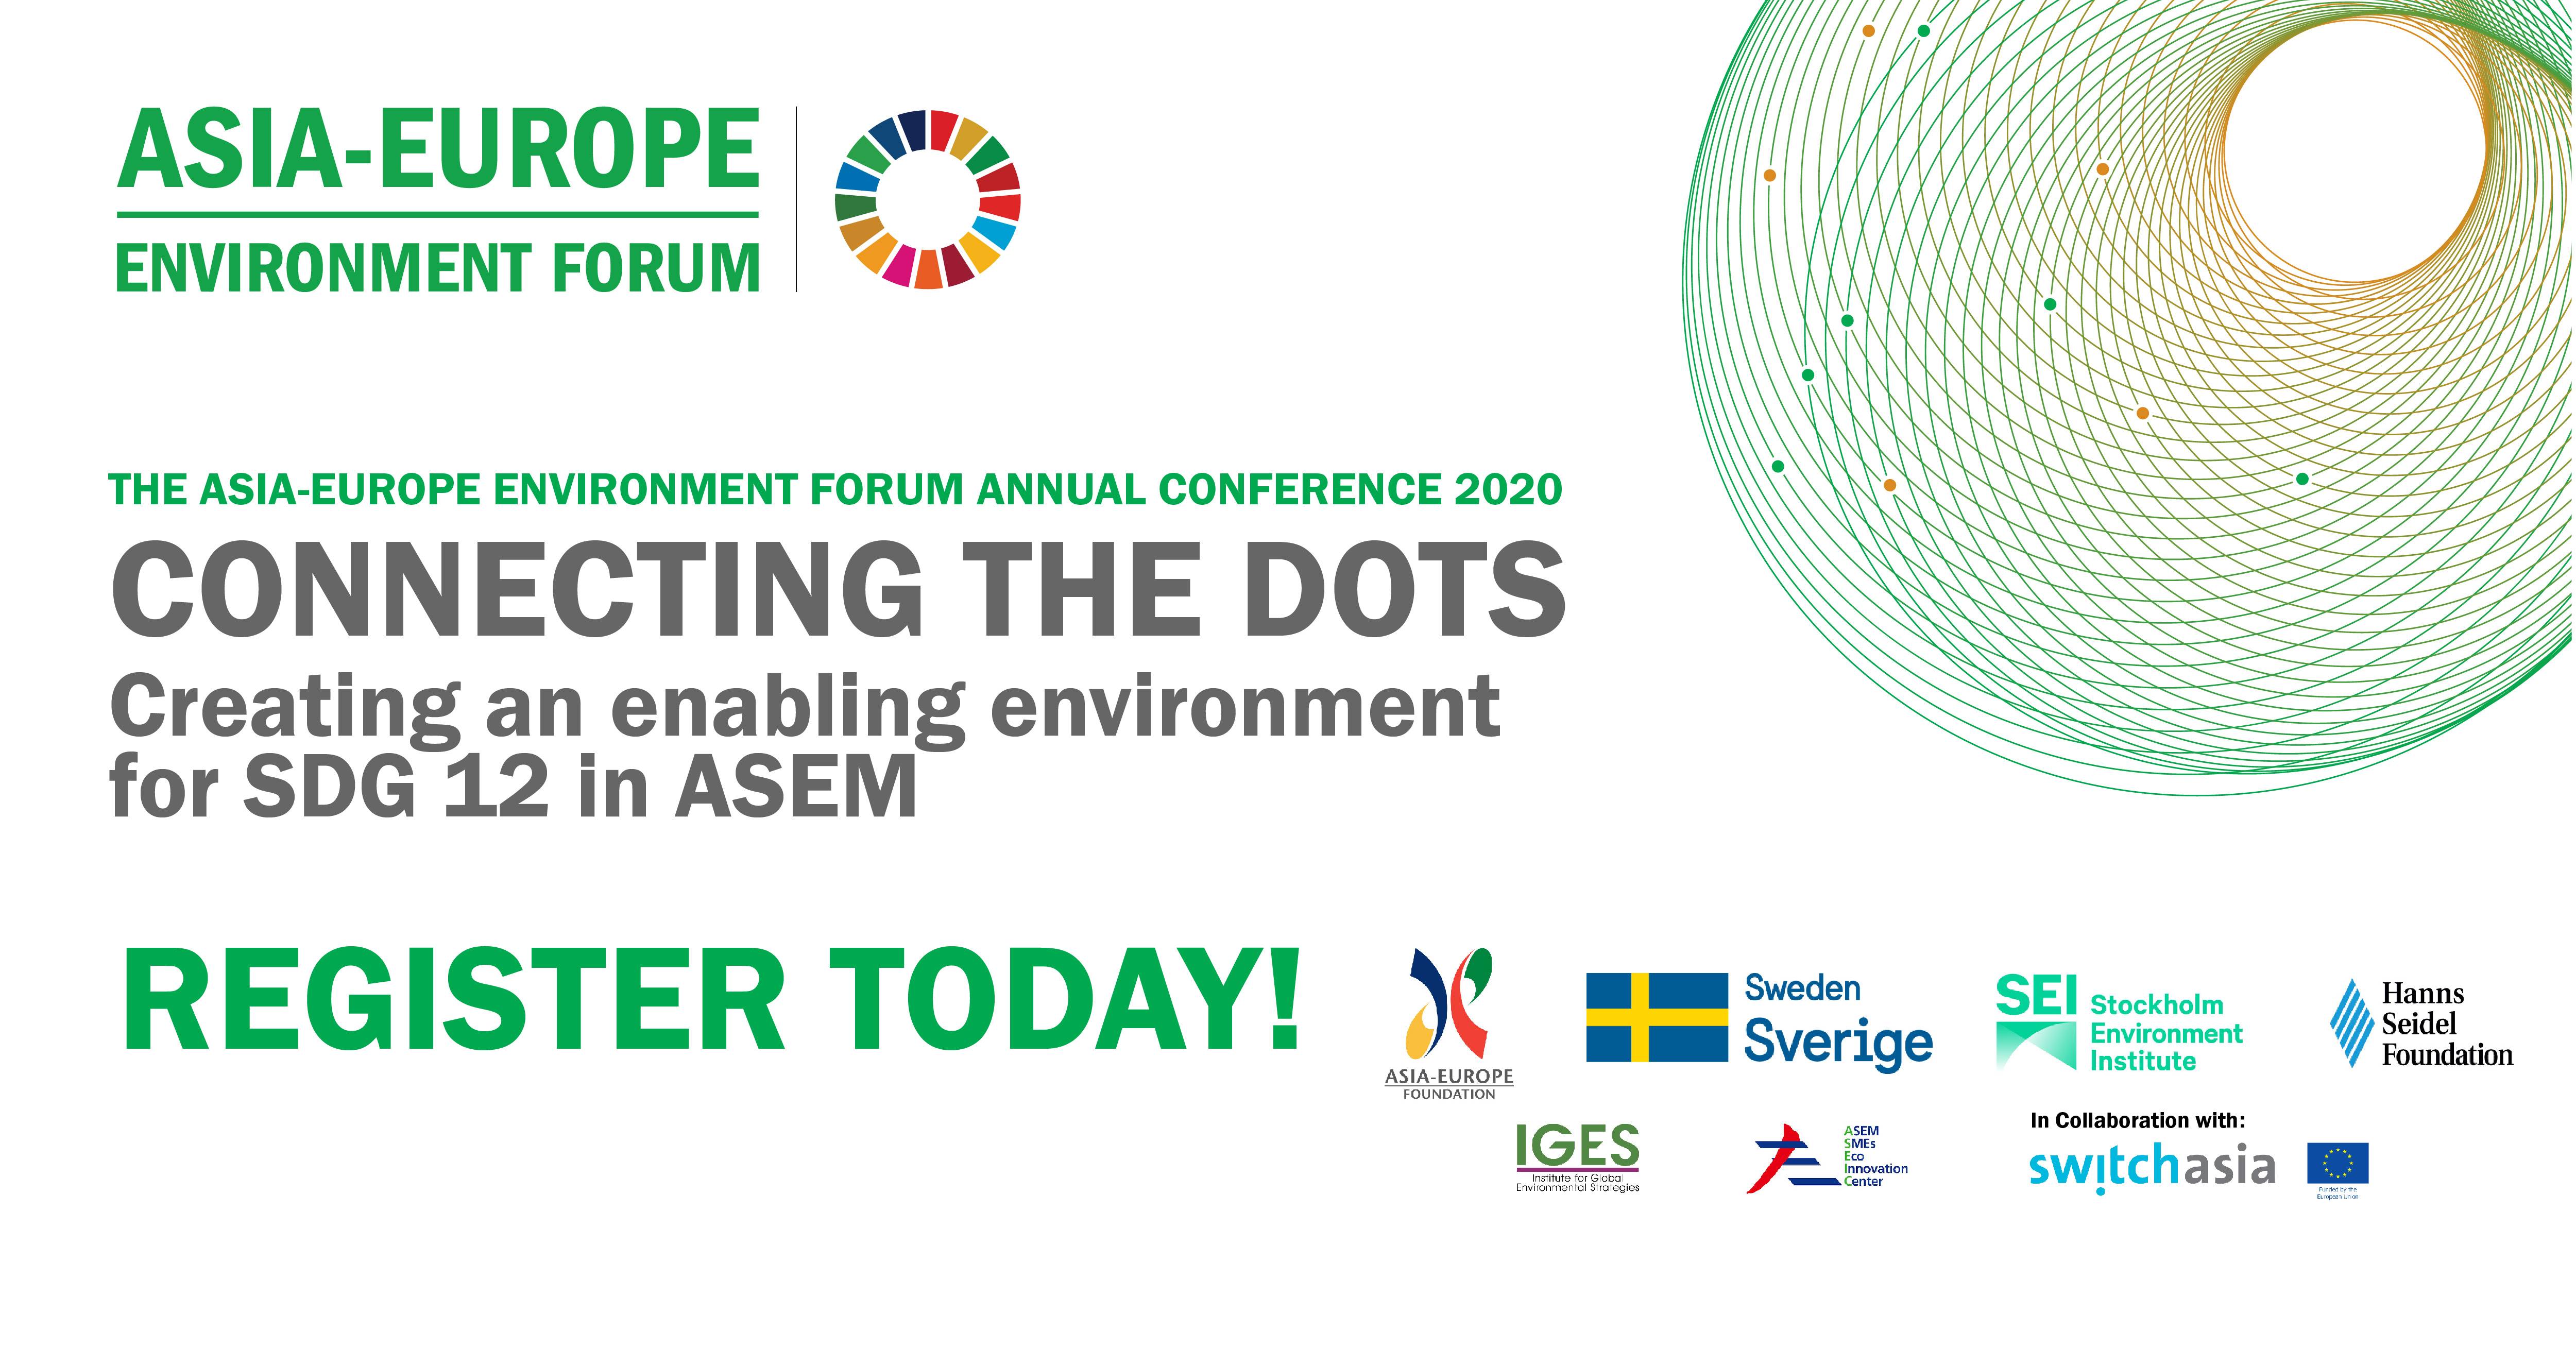 Creating an enabling environment for SDG12 in ASEM